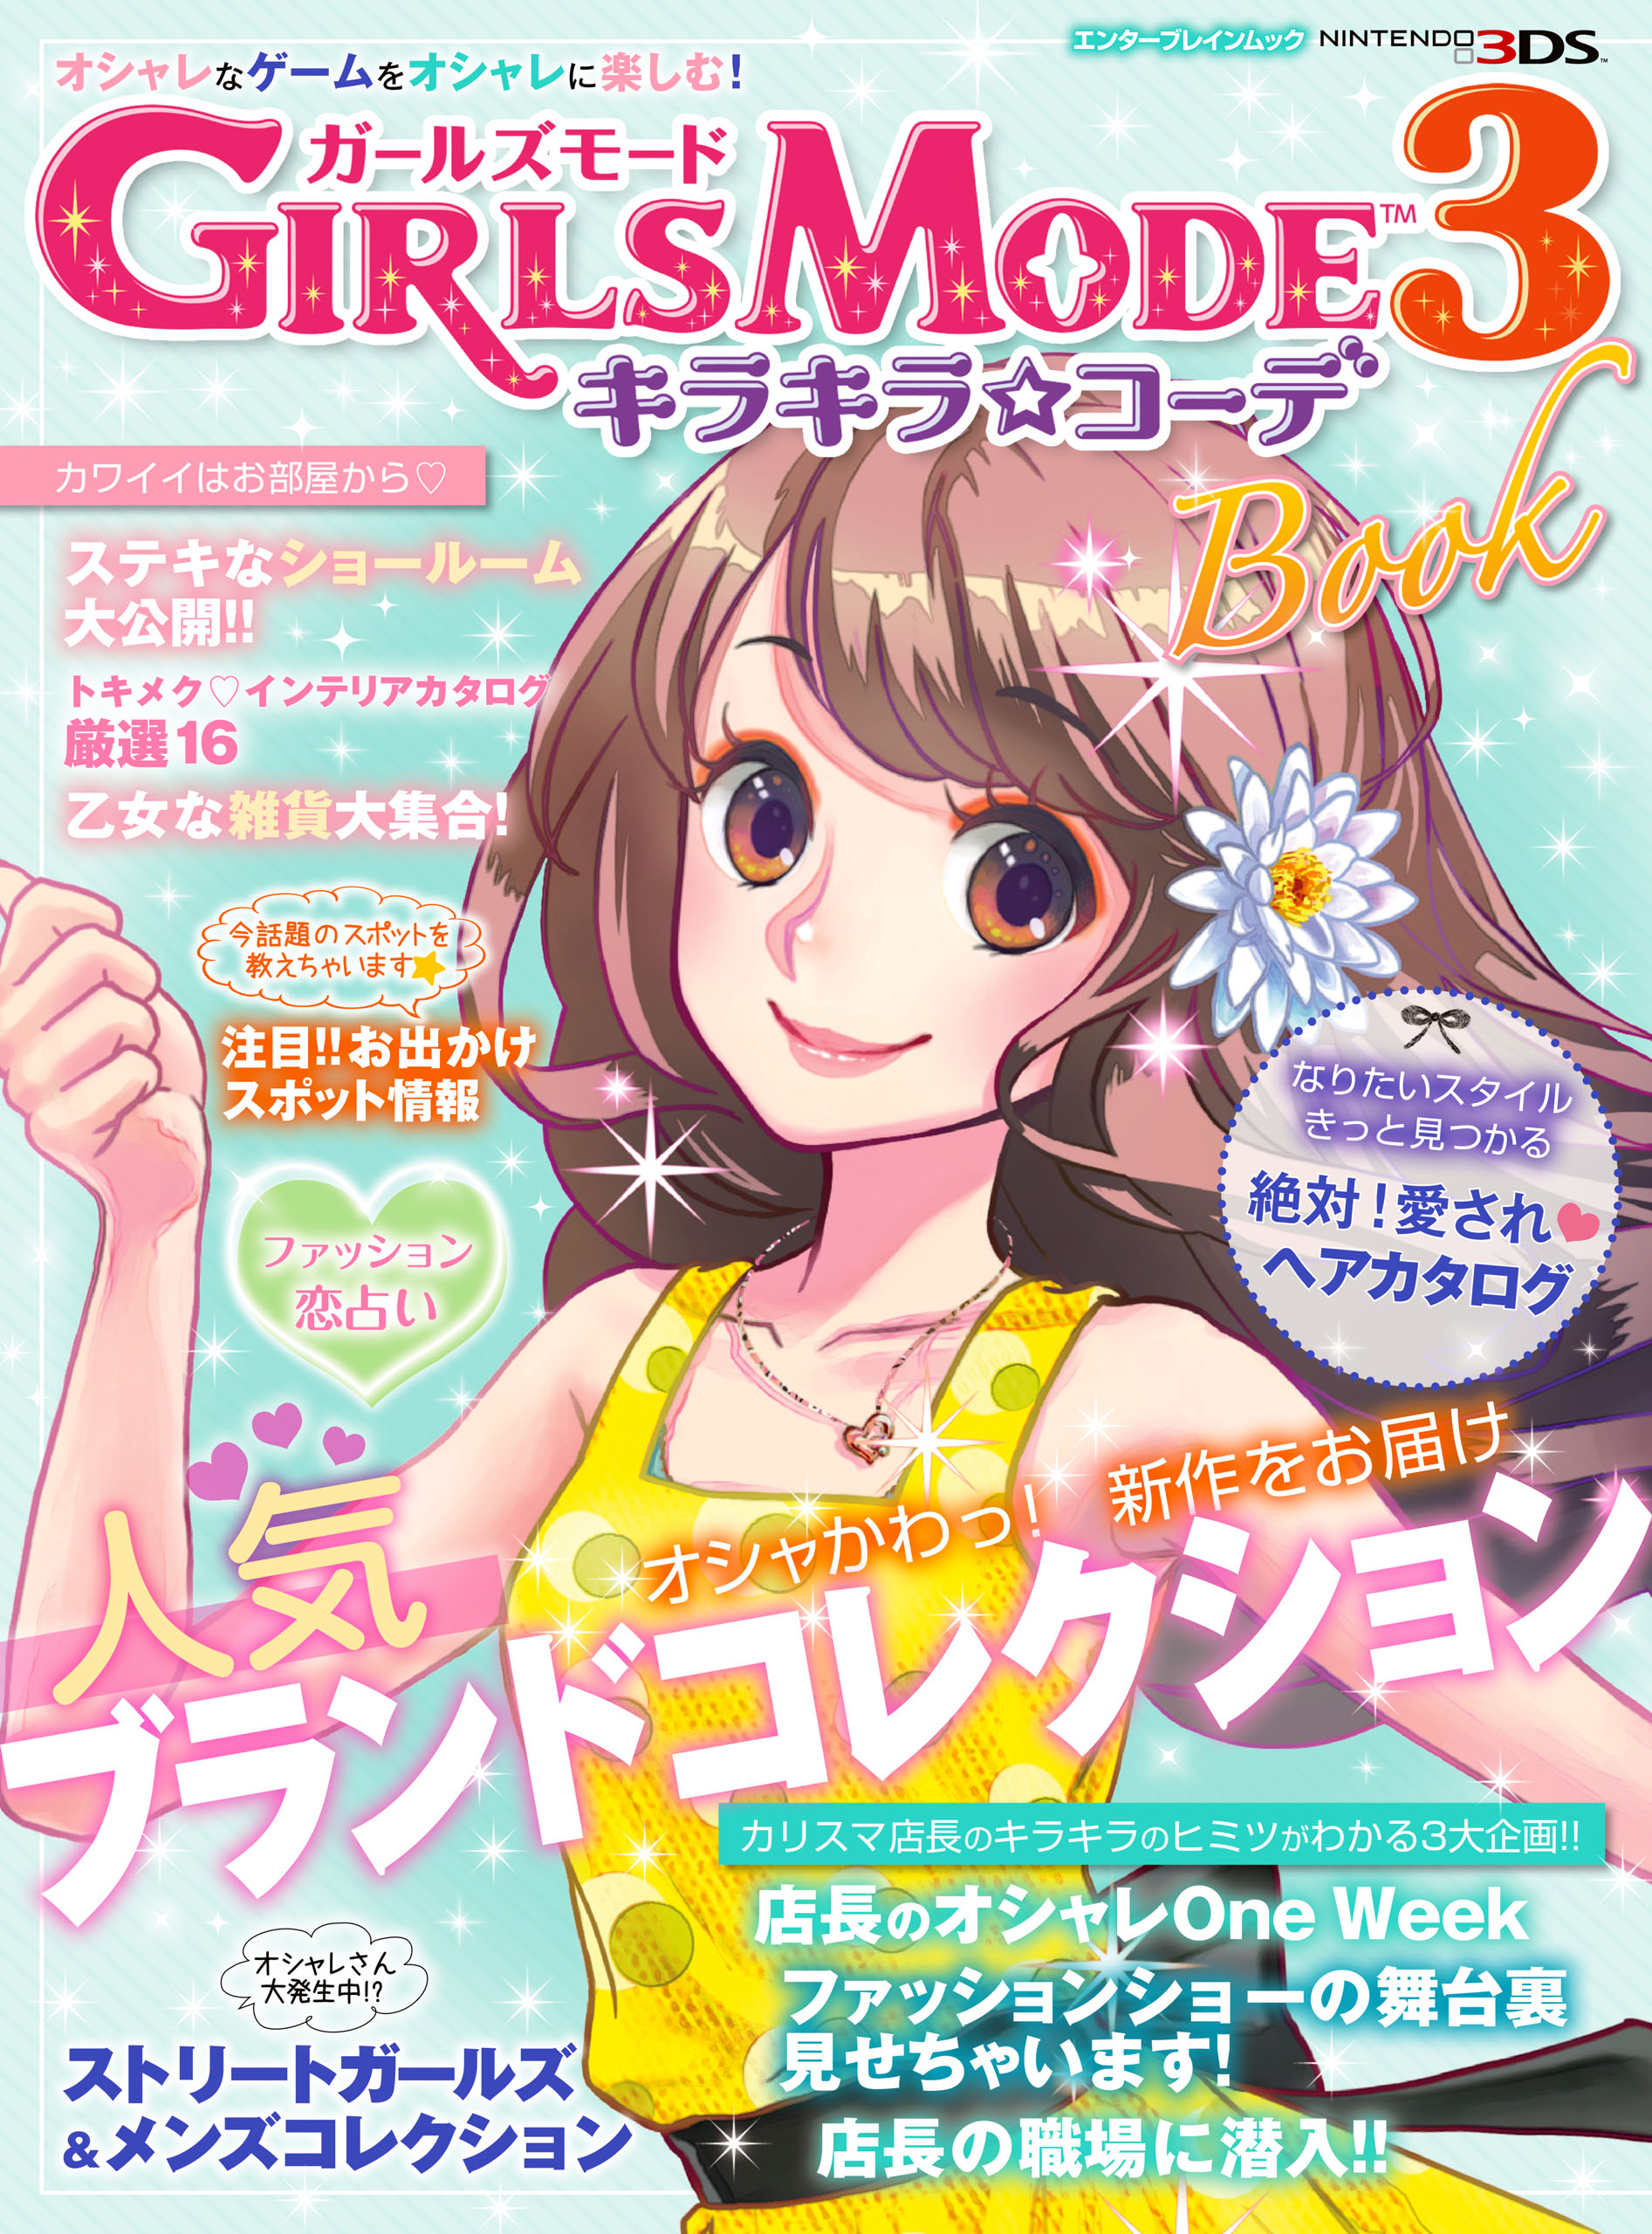 GIRLS MODE 3 キラキラ☆コーデ Book - ぴこぷり編集部 - 漫画・ラノベ